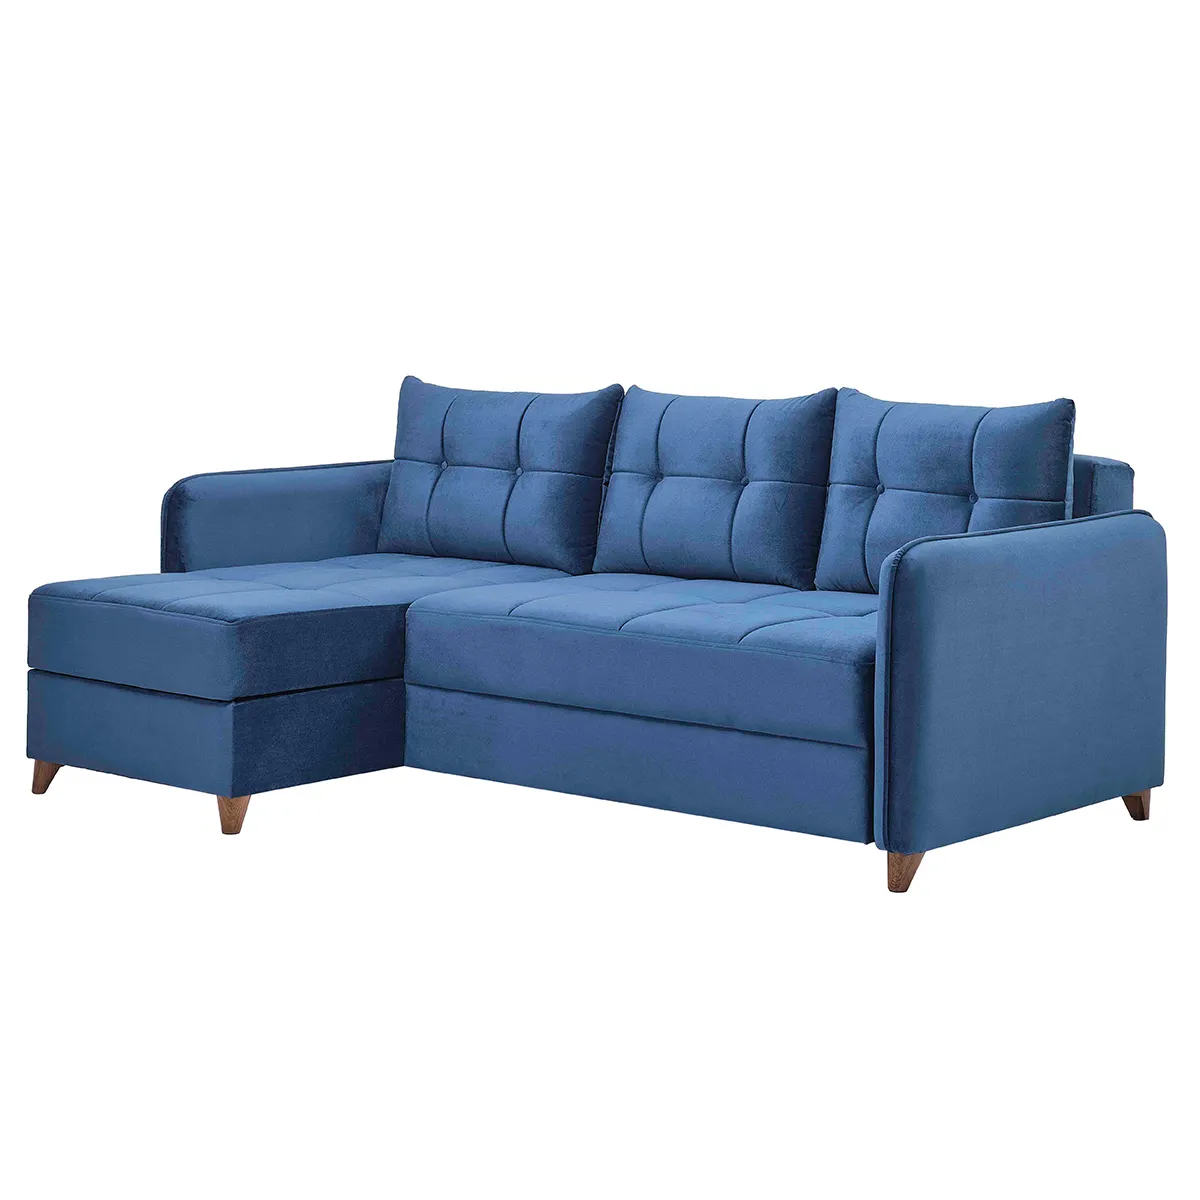 Угловой комфортный конвертируемый диван, решения для сна, роскошная мебель для гостиной, многофункциональная элегантность L-образной формы